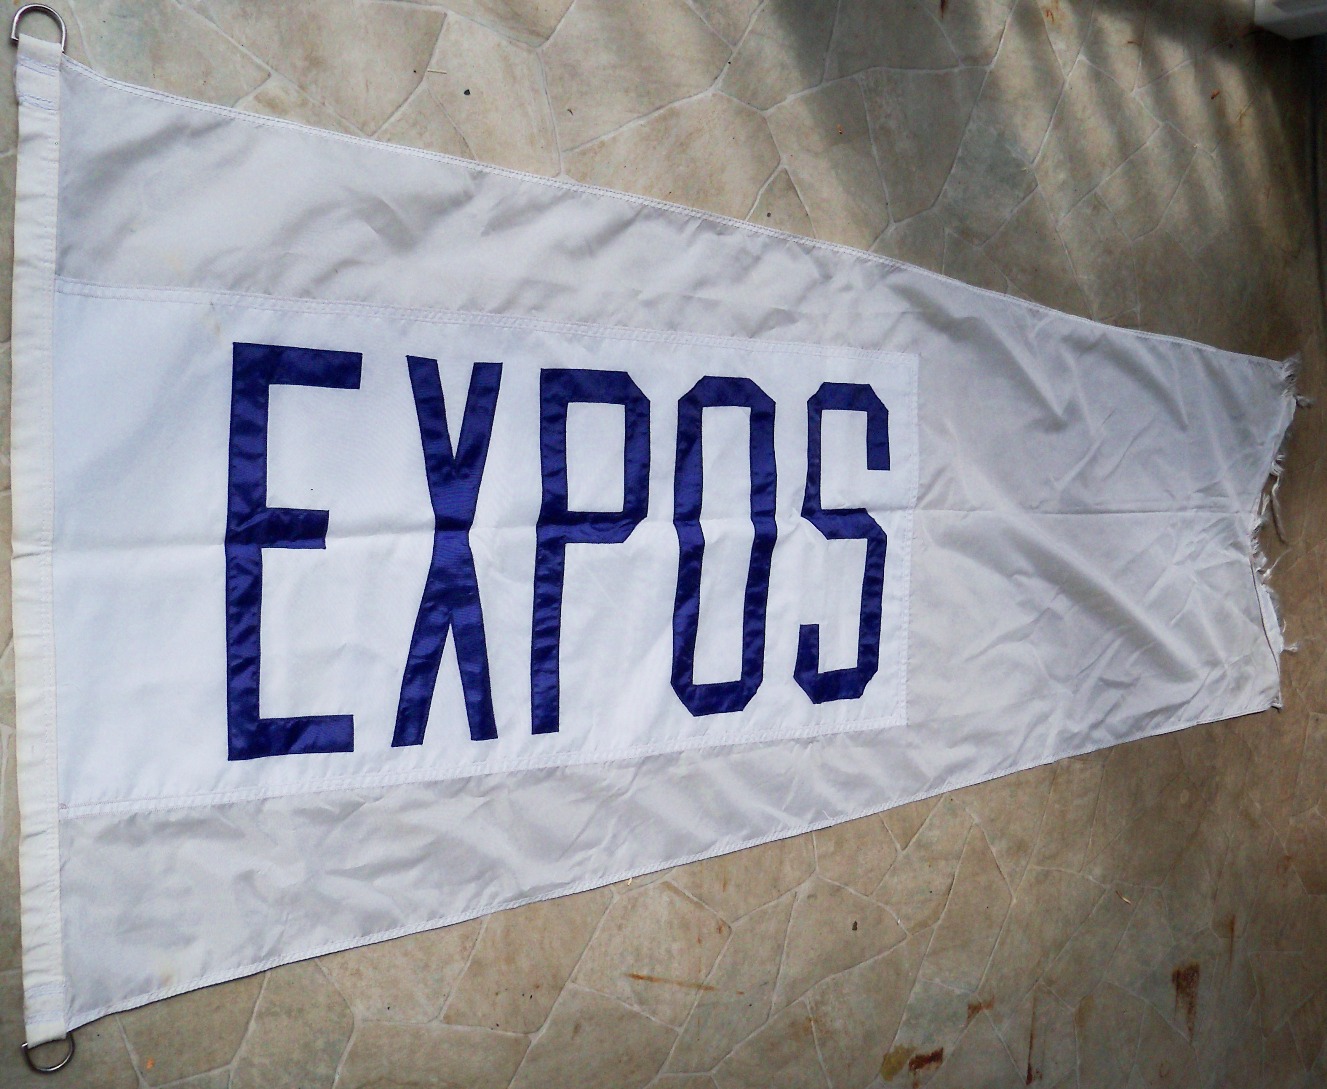 08690-ExposFlag--8-2022.JPG